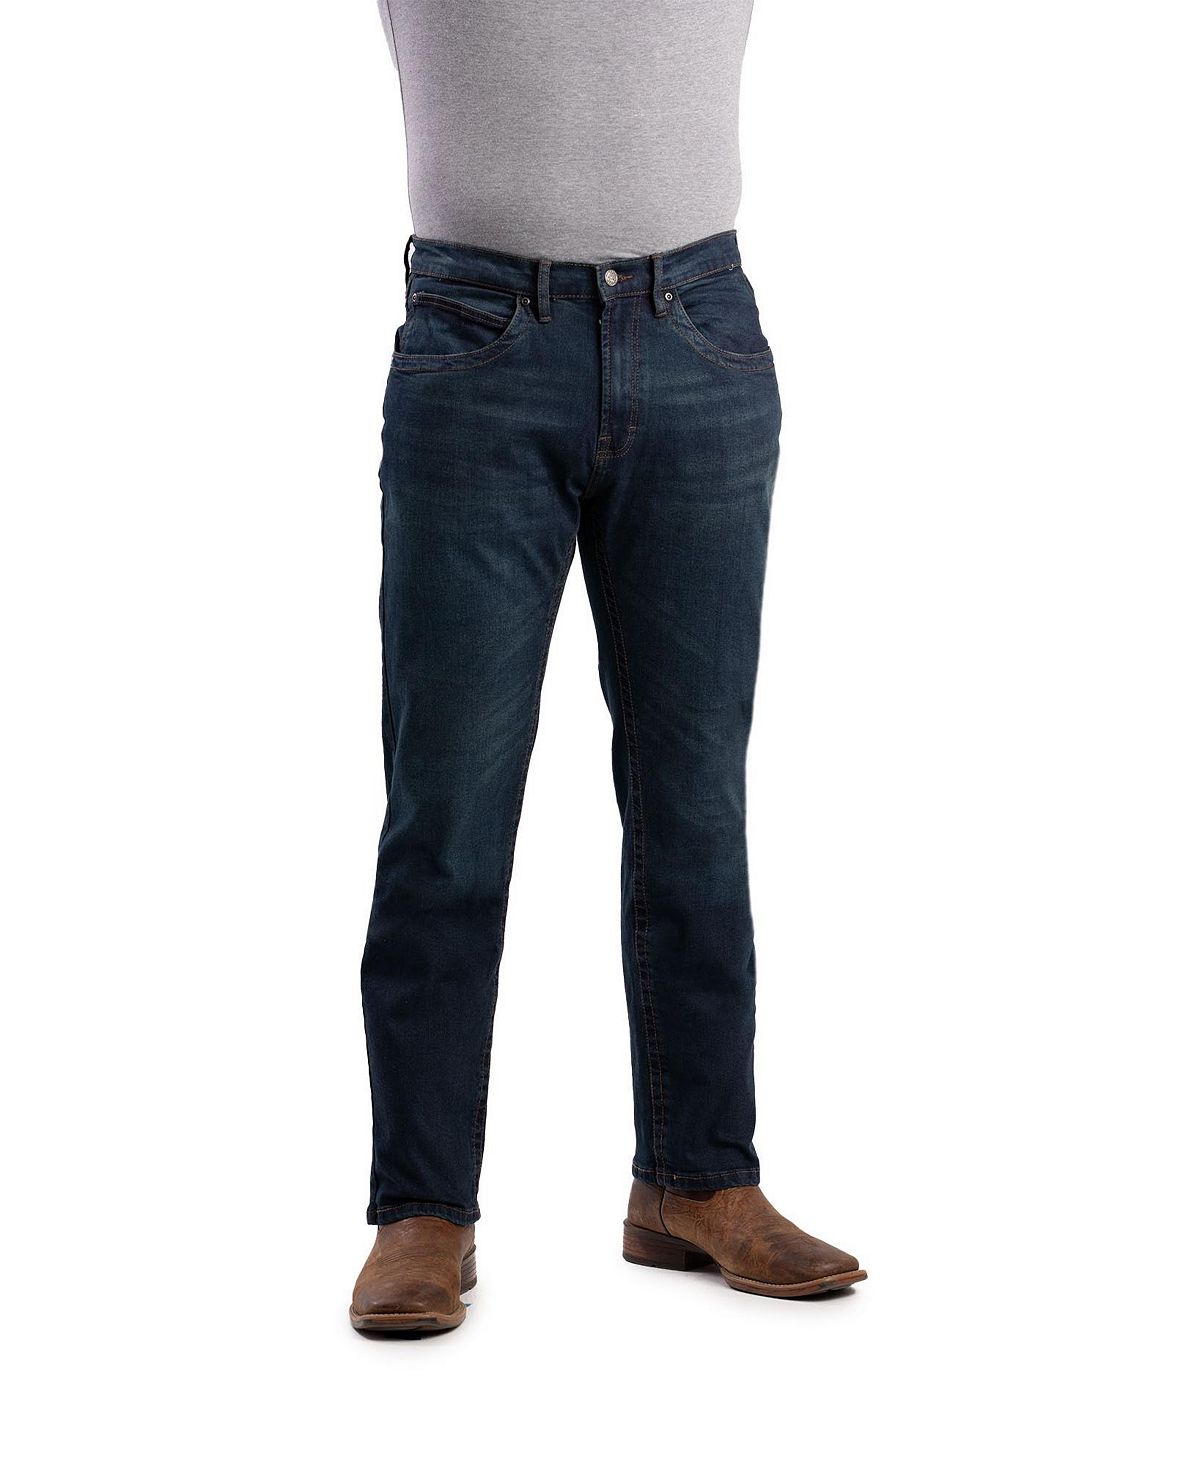 Мужские джинсы Highland Flex Fit прямого кроя Berne джинсы straight leg multiflex noos blend цвет grey